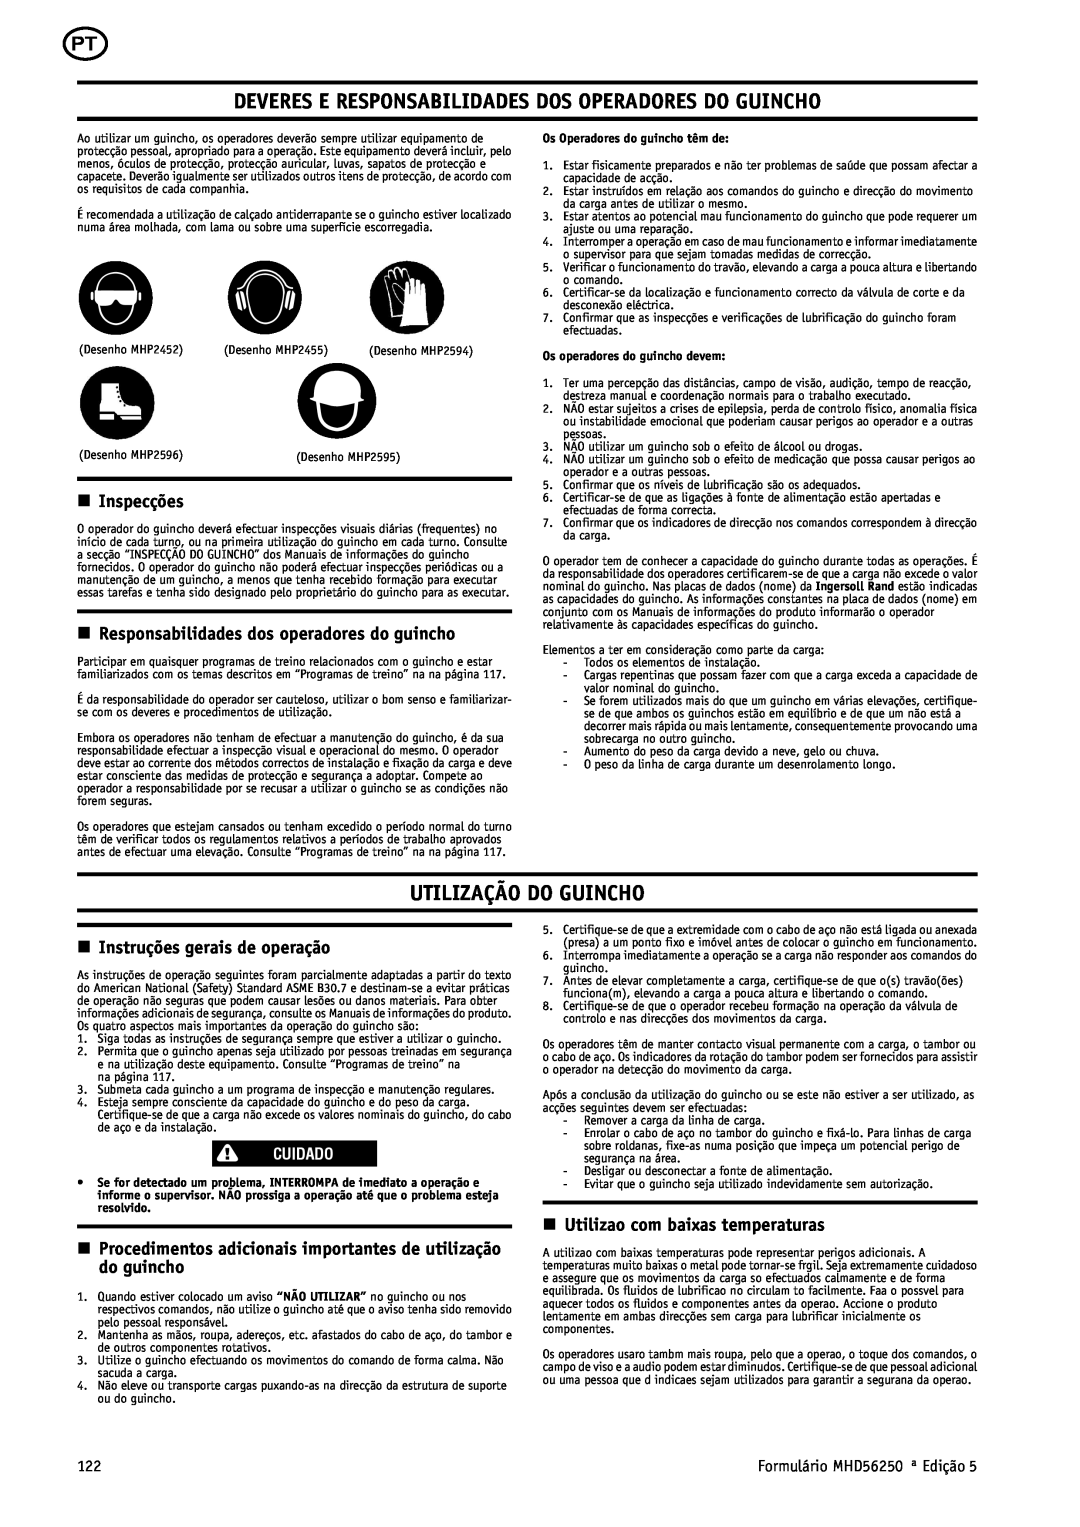 Ingersoll-Rand MHD56250 manual Deveres E Responsabilidades Dos Operadores Do Guincho, Utilização Do Guincho, n Inspecções 